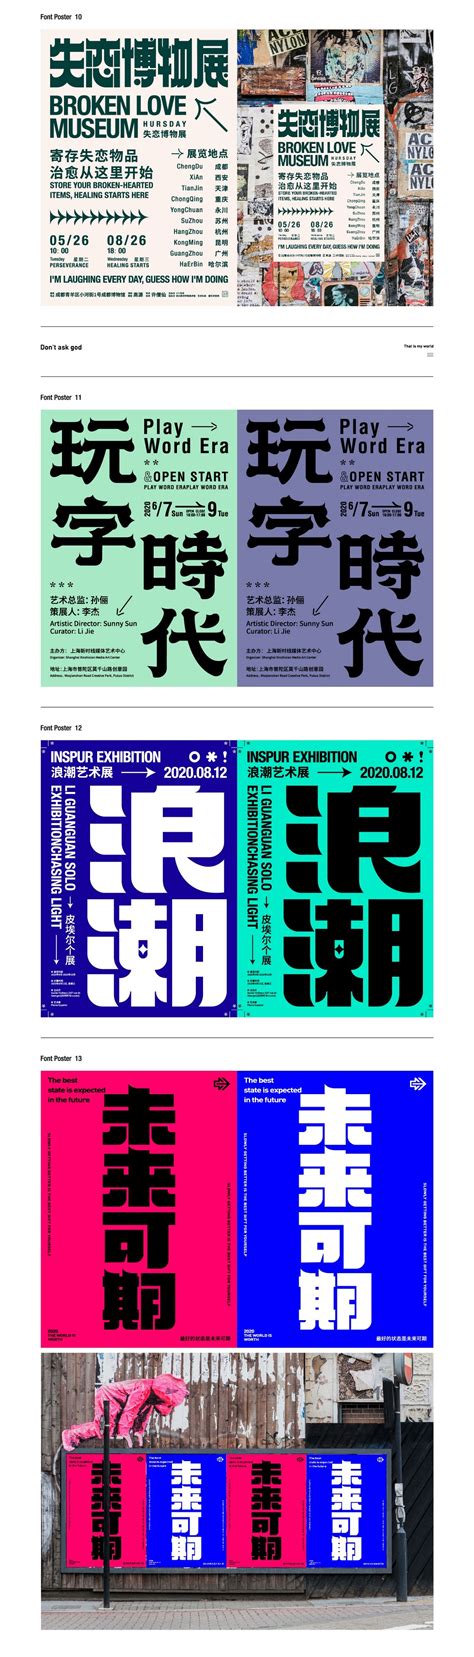 字体&版式-CND设计网,中国设计网络首选品牌